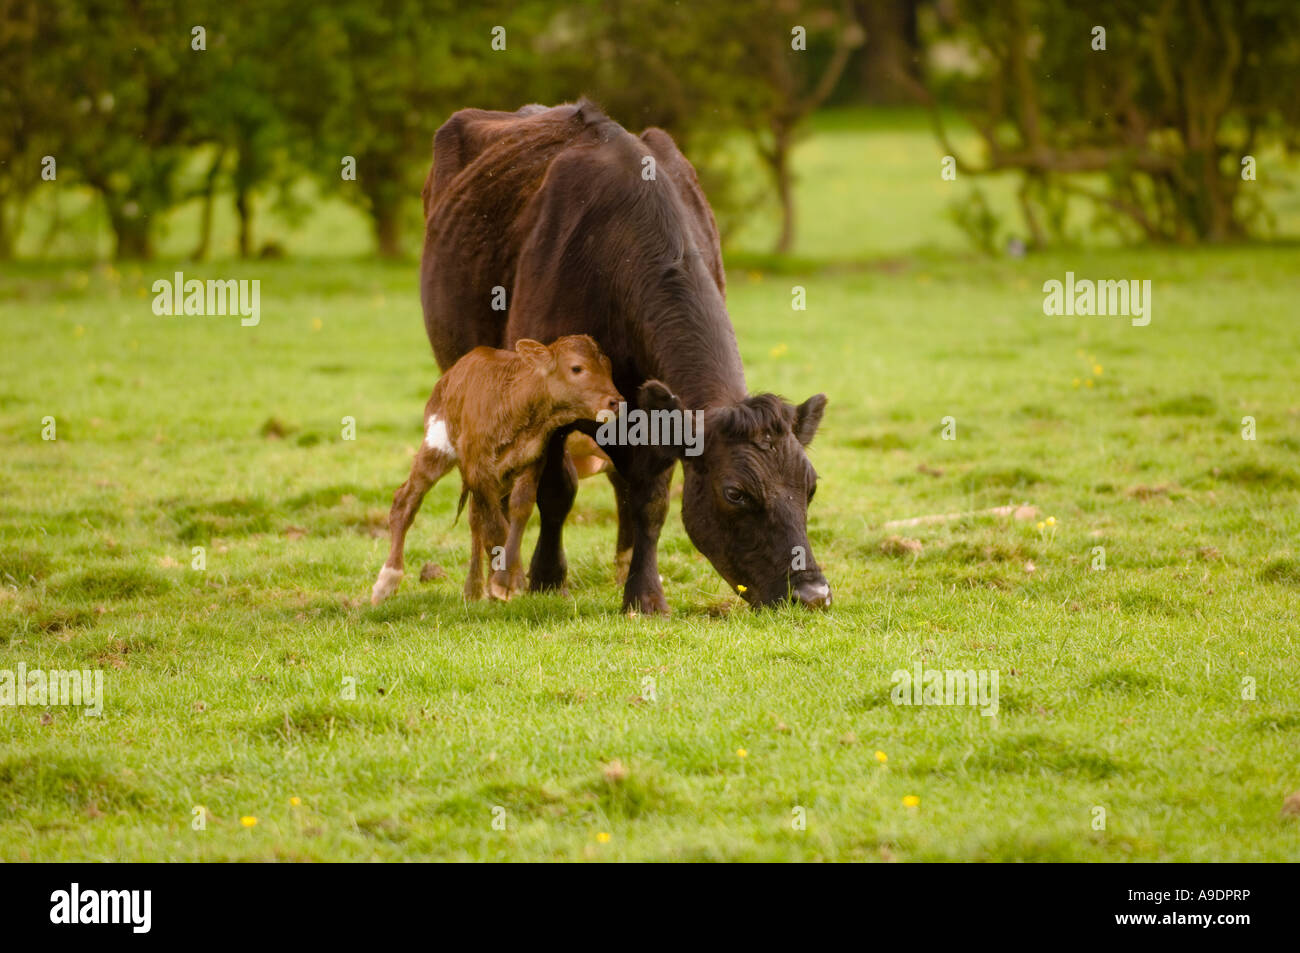 Un vitello di un'ora ancora instabile ai piedi appoggiato alla madre per il sostegno. Foto Stock